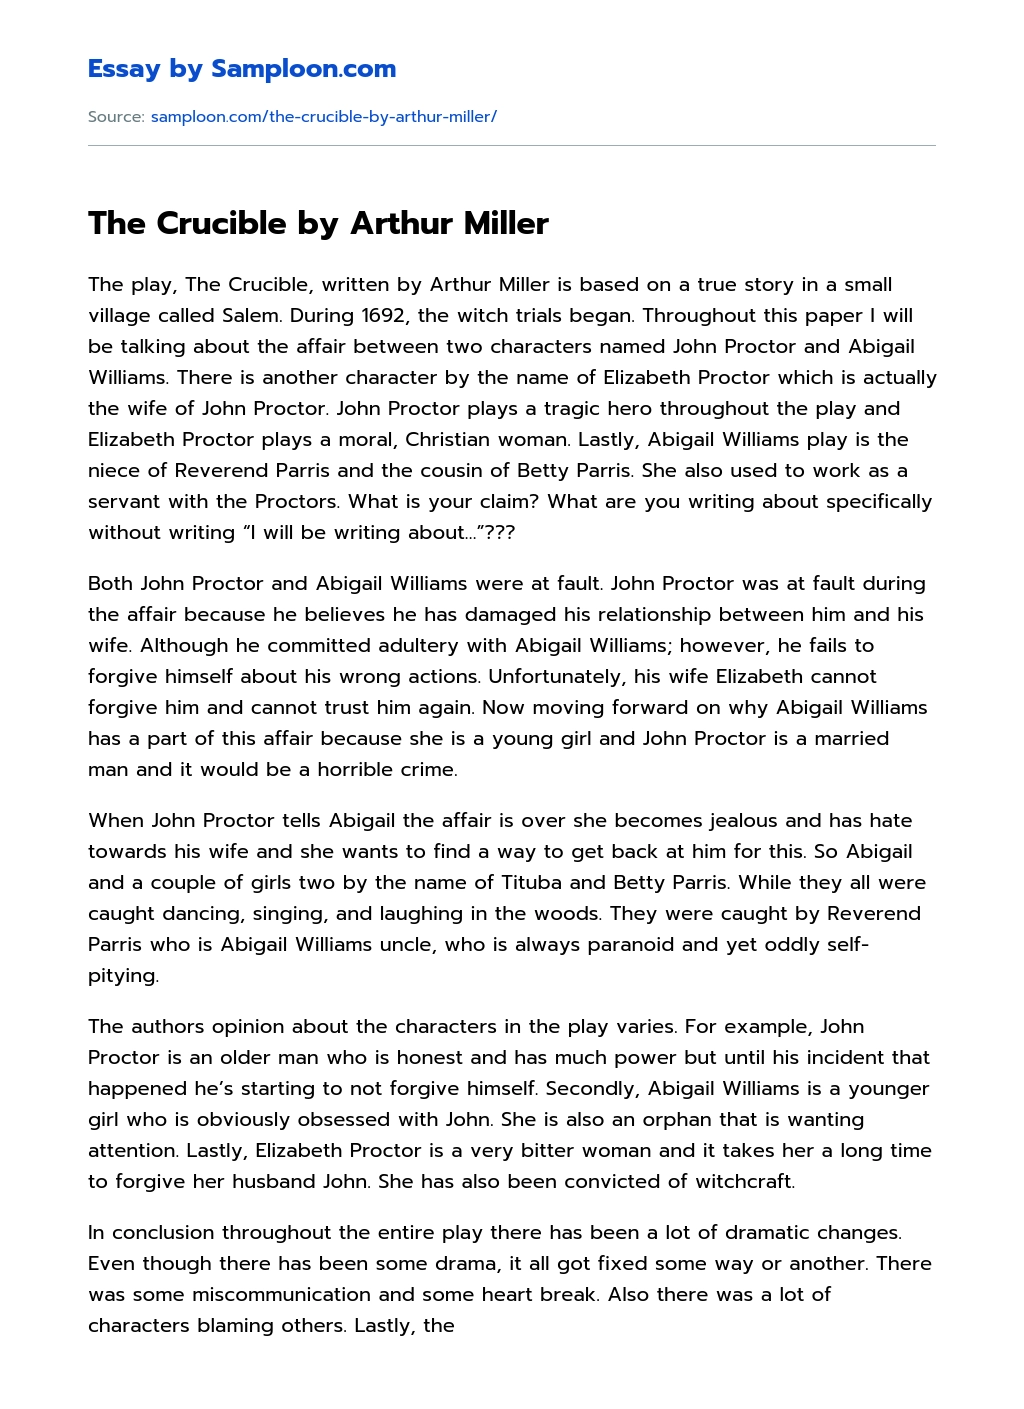 arthur miller essay on the crucible